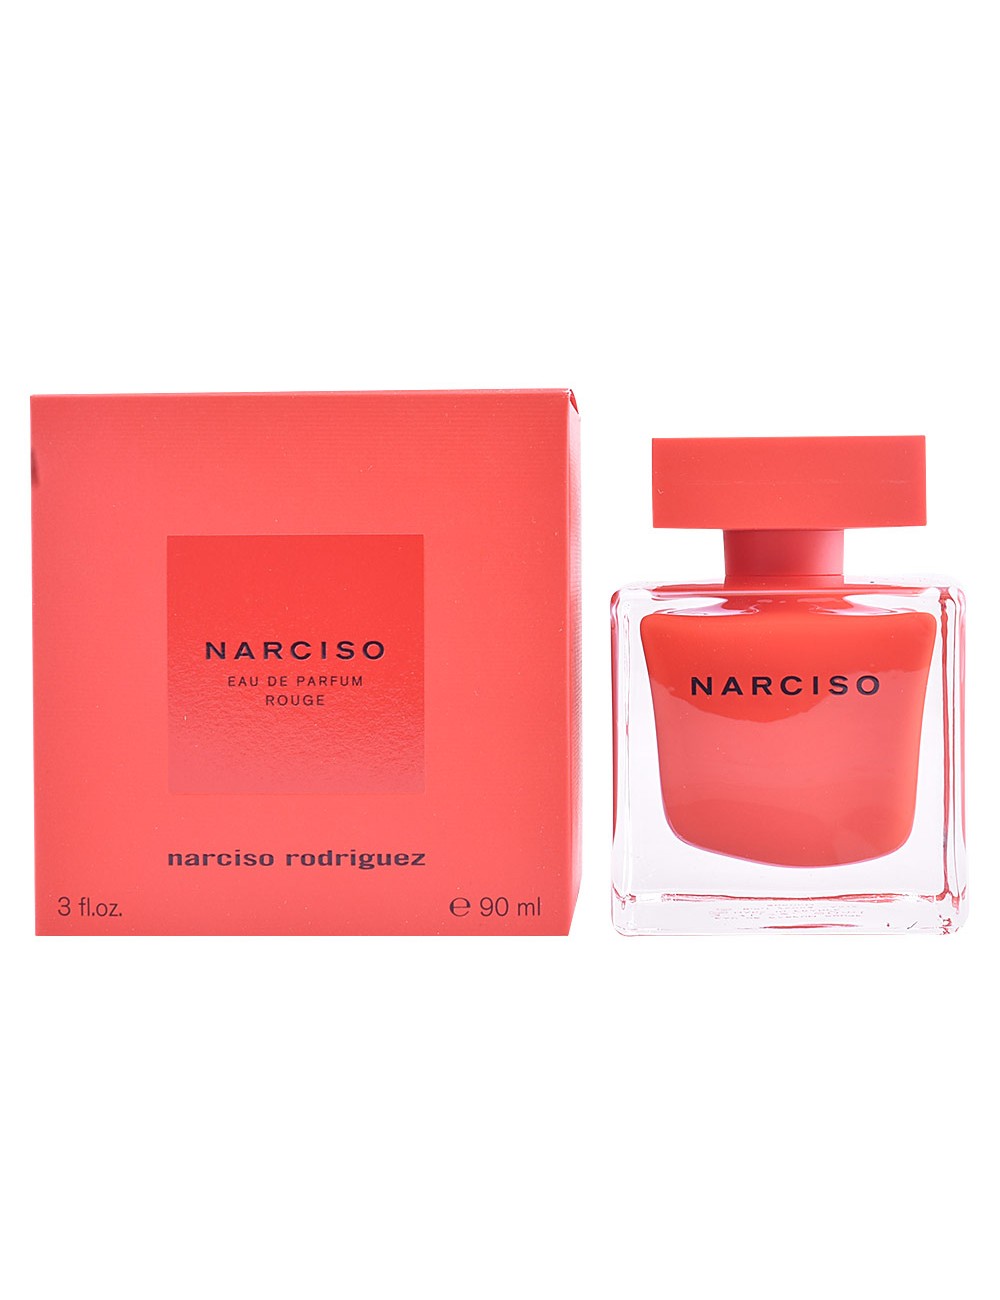 NARCISO ROUGE eau de parfum 90 ml - NARCISO RODRIGUEZ